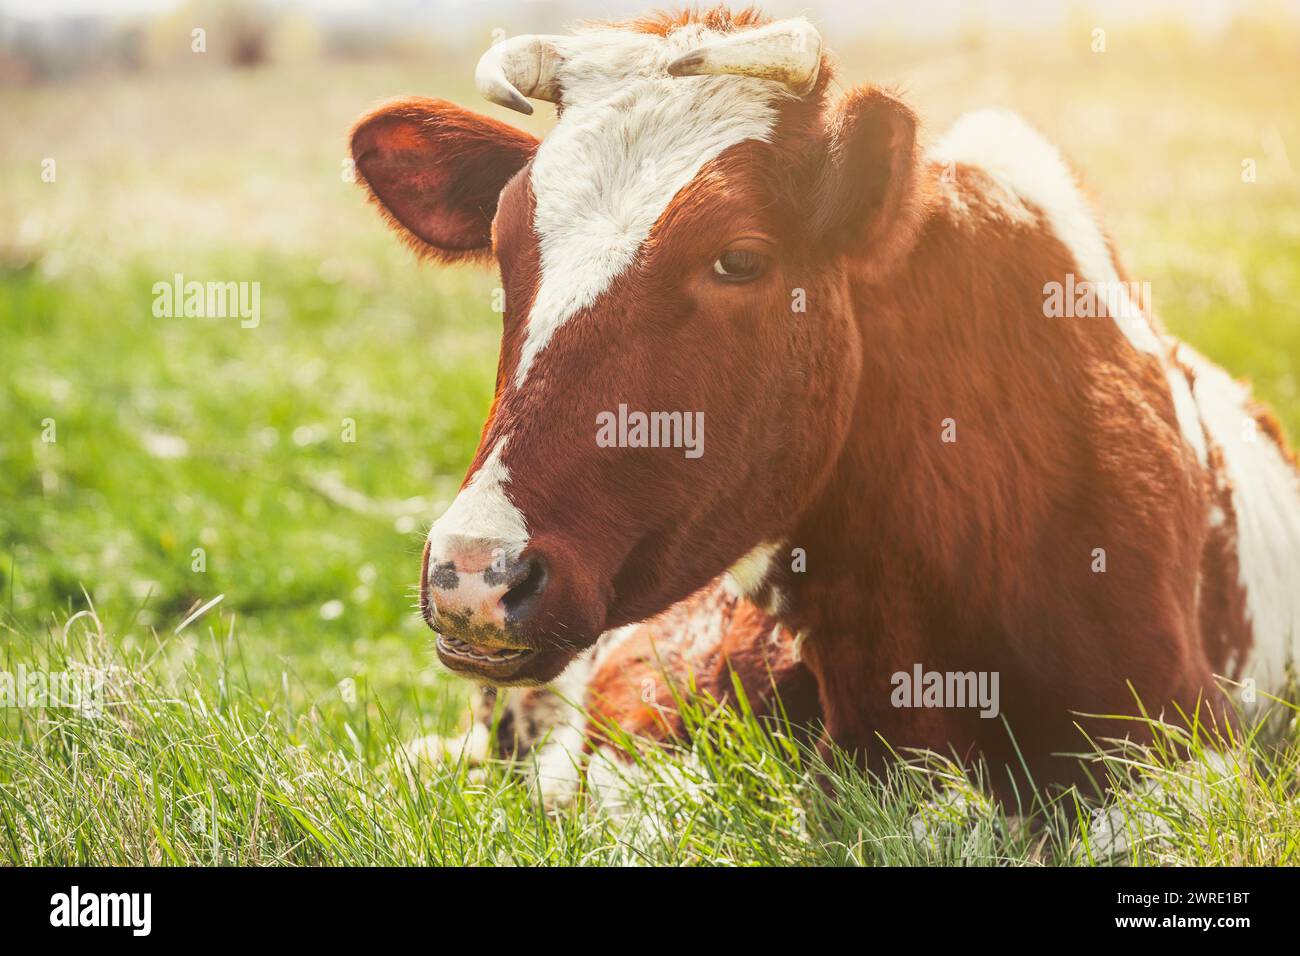 Une jeune vache à cornes de couleur brune repose sur un pré. Élevage d'animaux à la ferme. Banque D'Images